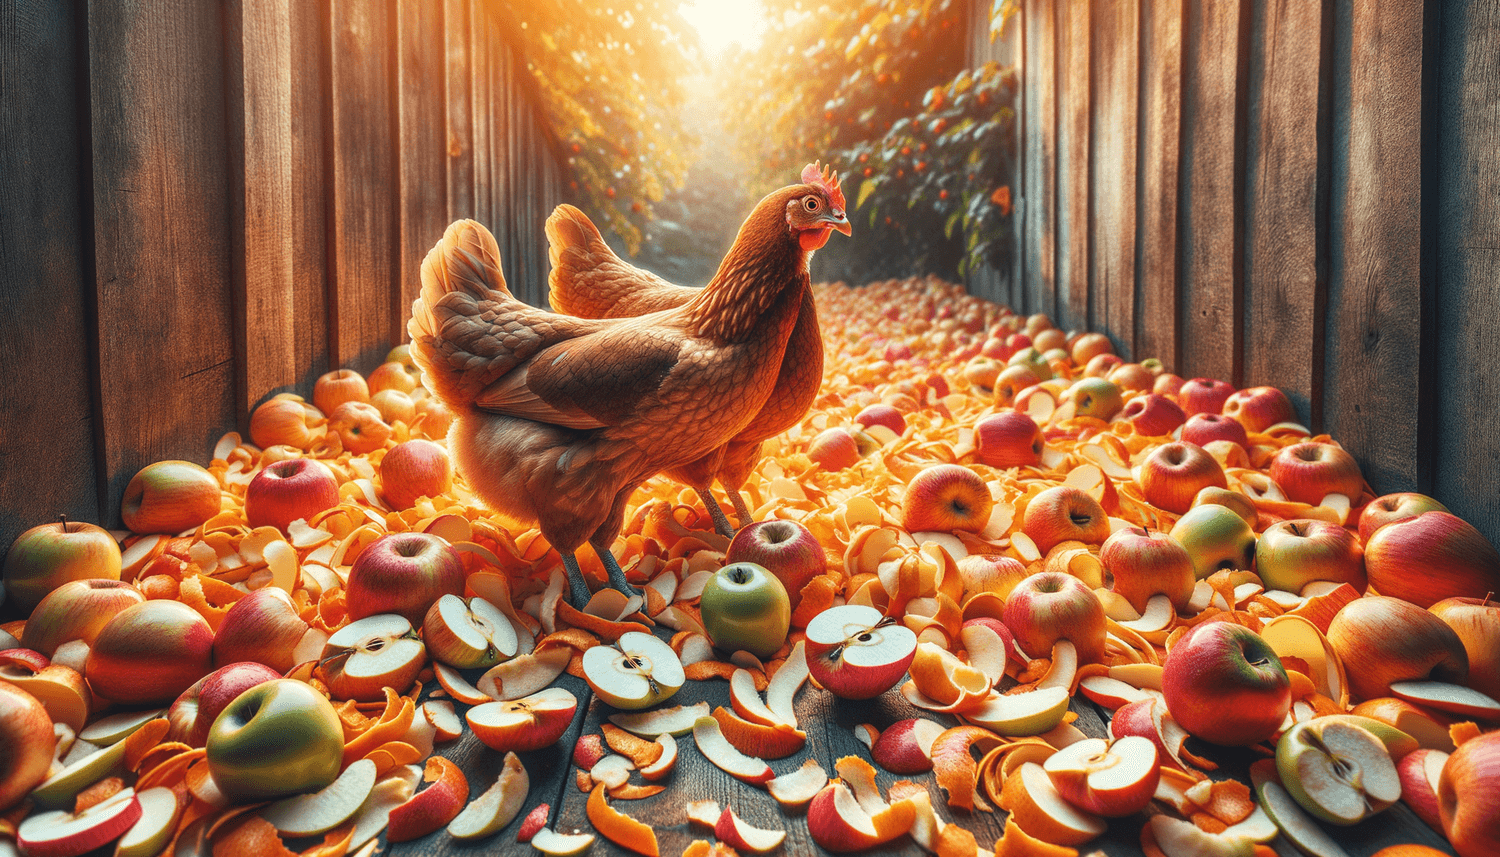 Can Chickens Eat Apple Peelings?